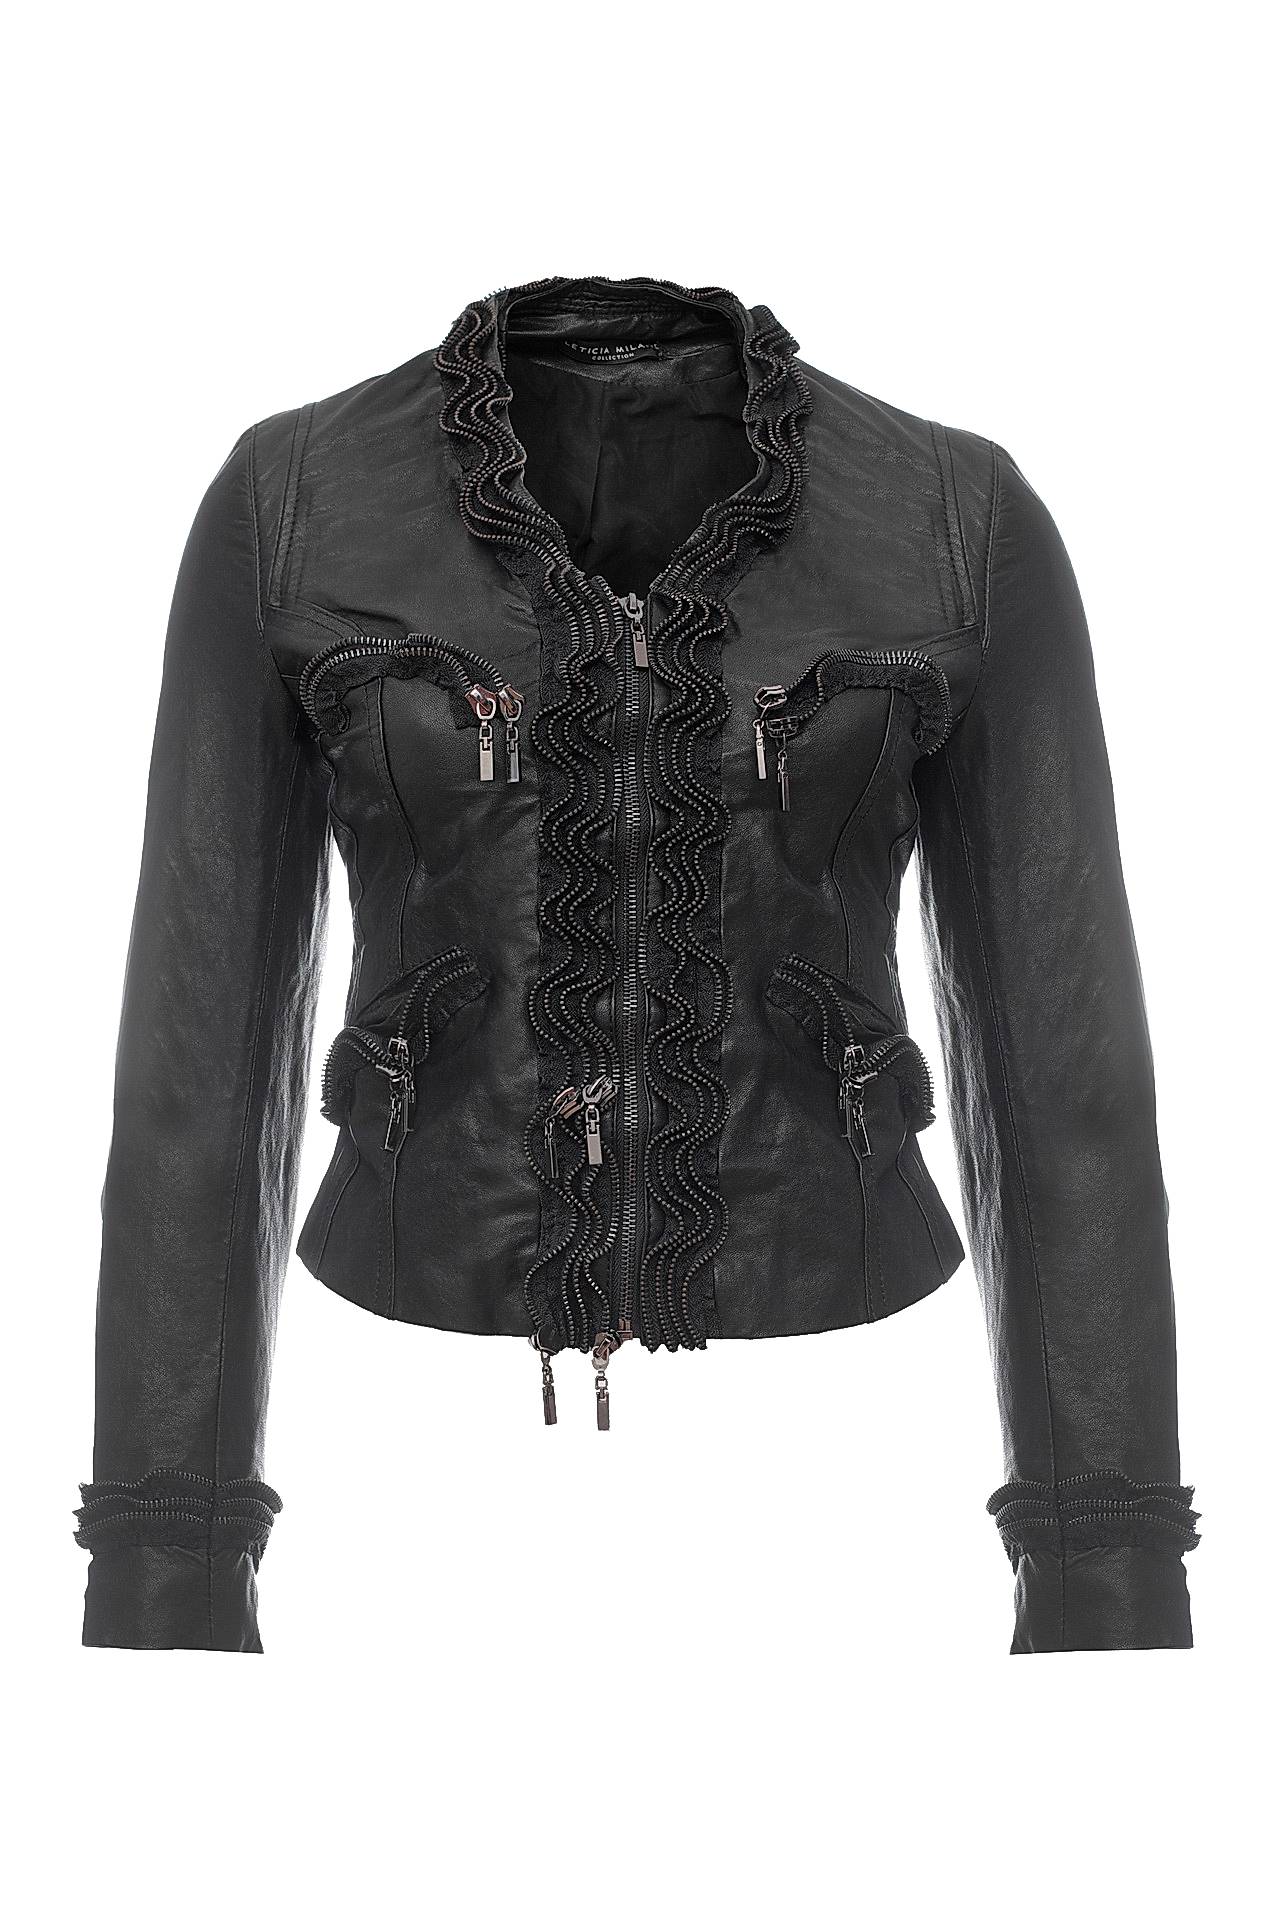 Одежда женская Куртка LETICIA MILANO (KOGMOL/16.2). Купить за 24850 руб.